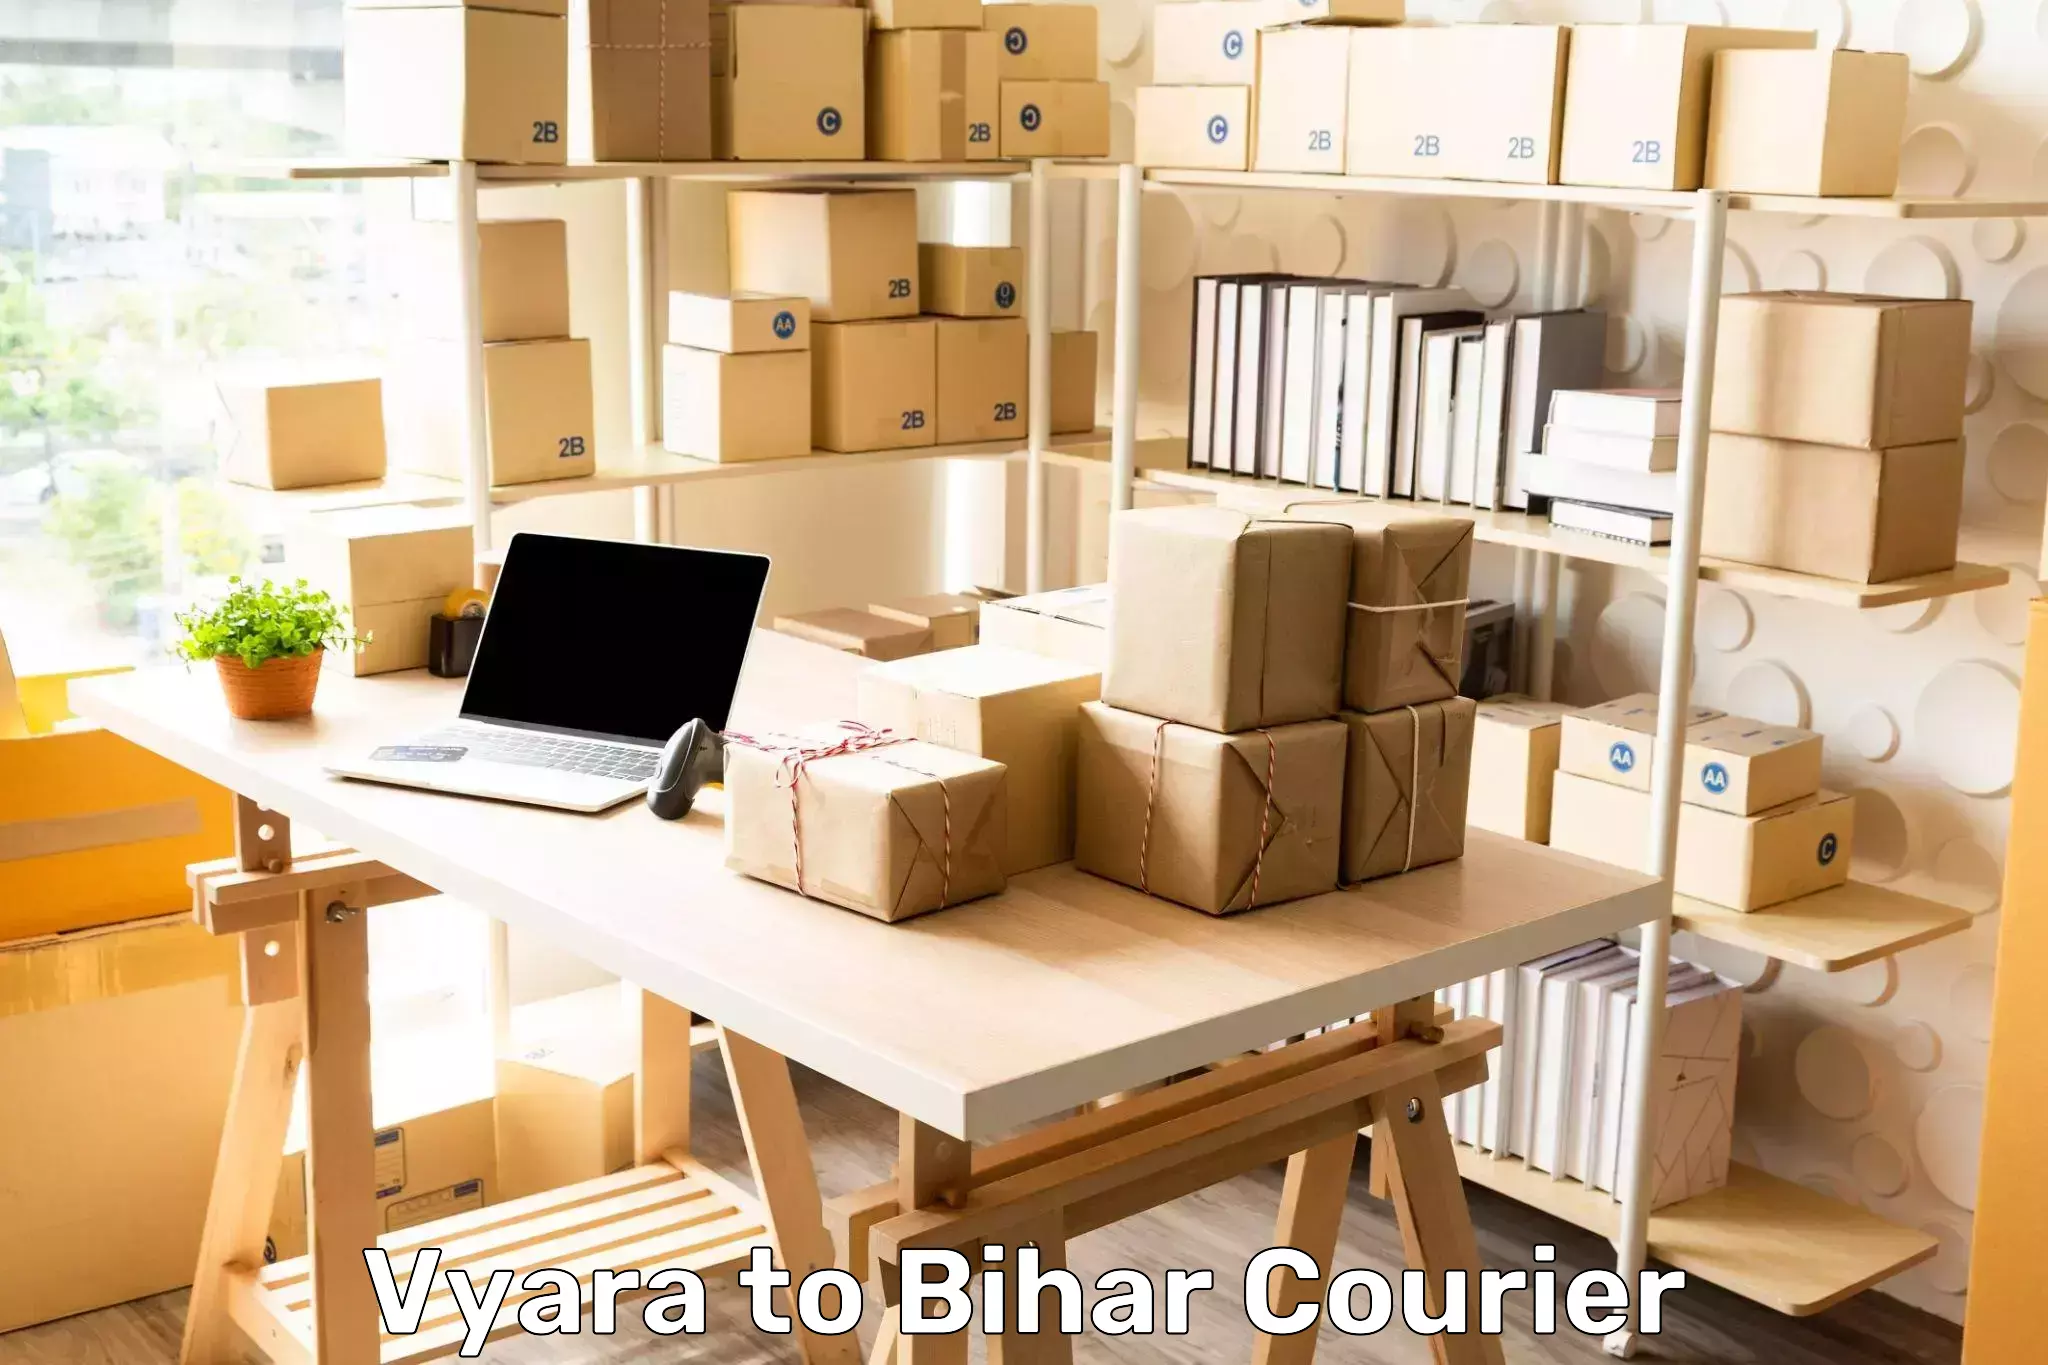 Parcel handling and care Vyara to Bettiah